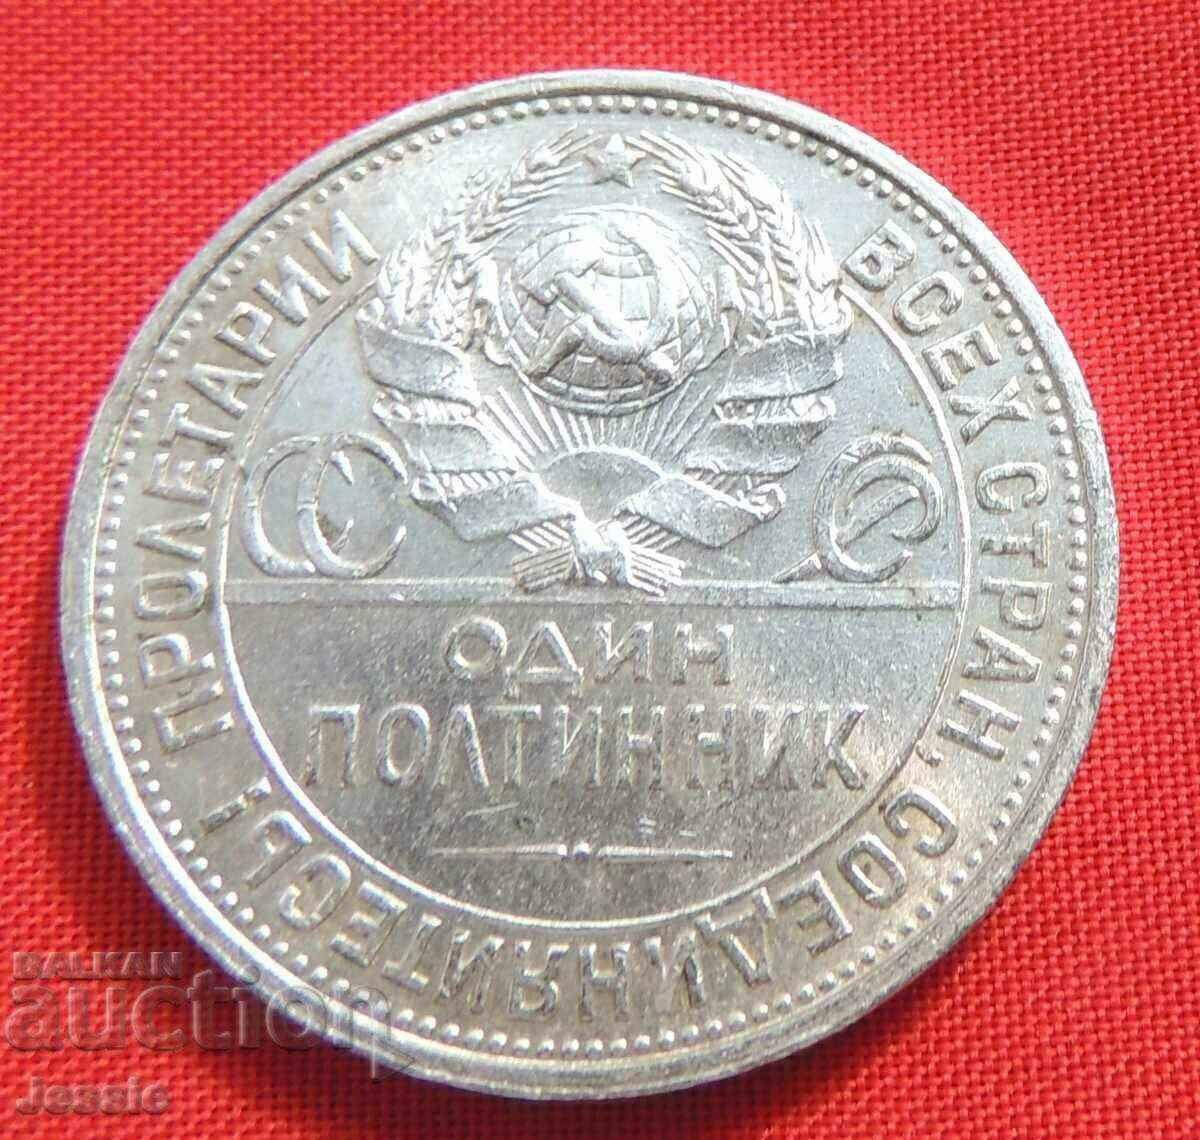 1 poltinnik 1925 PL URSS argint matrice parțială lucioasă